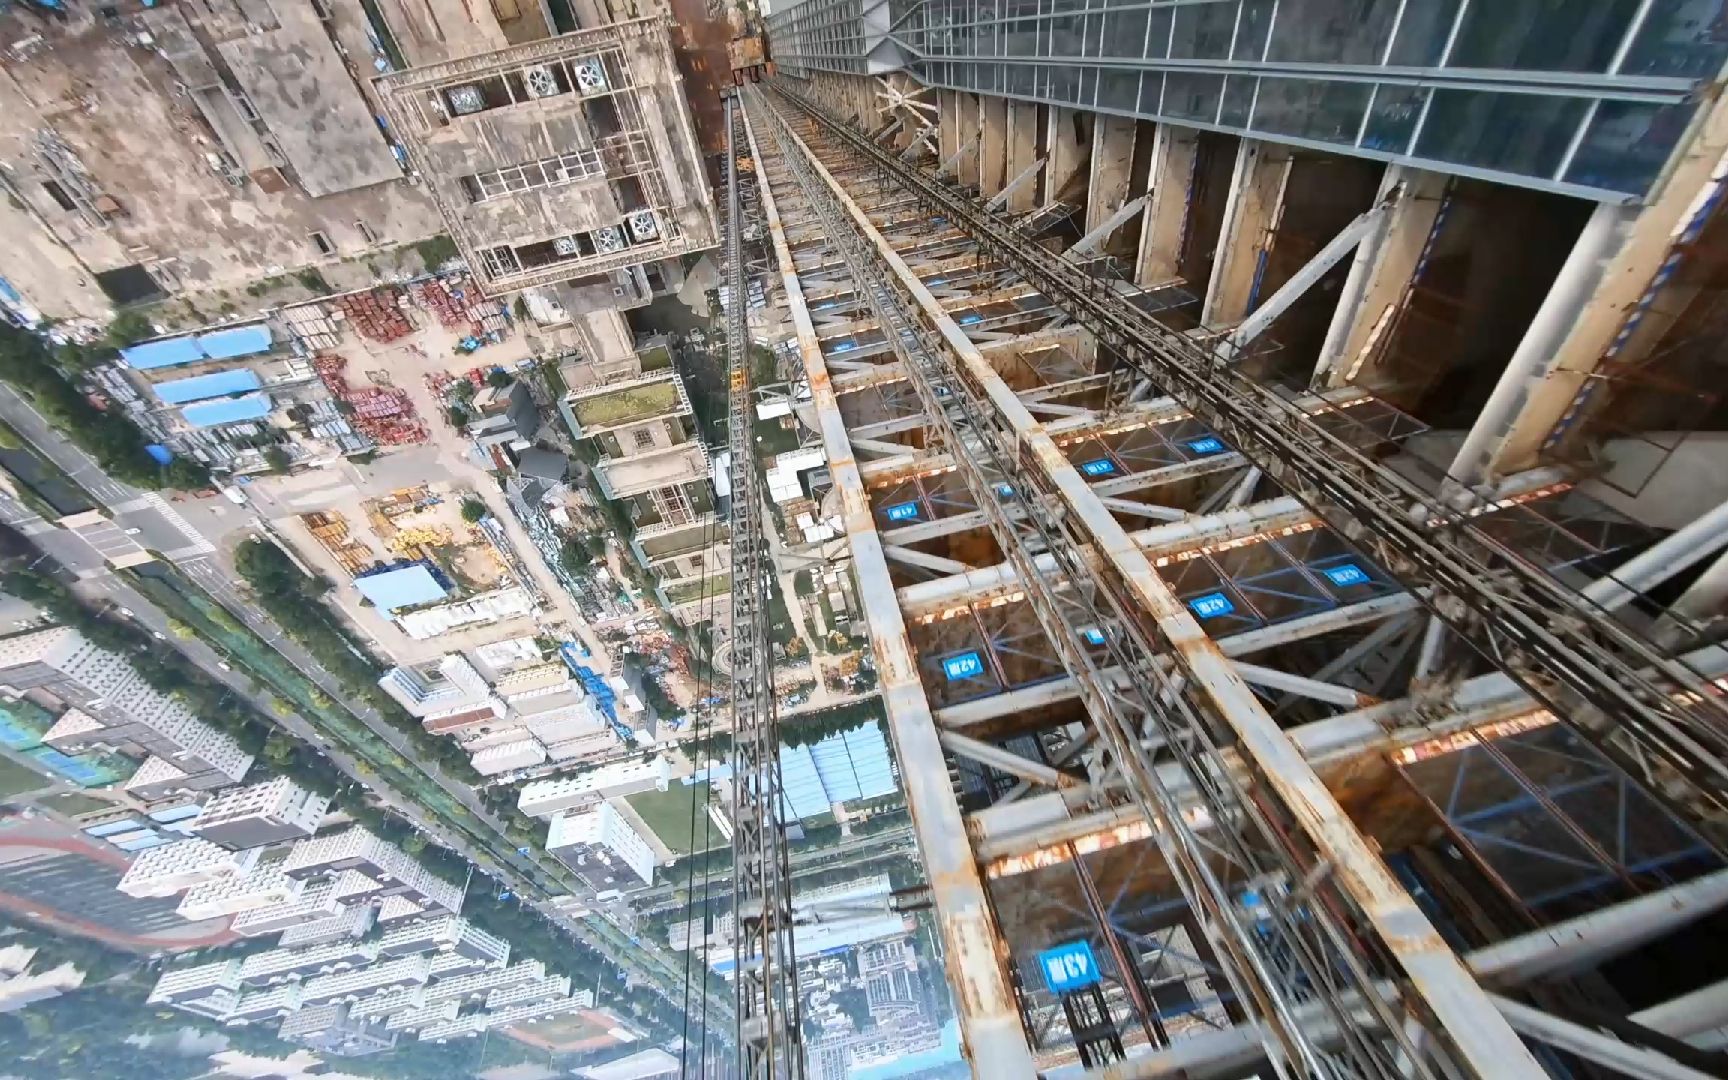 红牛赞助-FPV飞跃 - 天津117大厦597米世界第一烂尾楼.最后炸机了穿越机摔得稀巴烂！！！最下面是无人得工地！